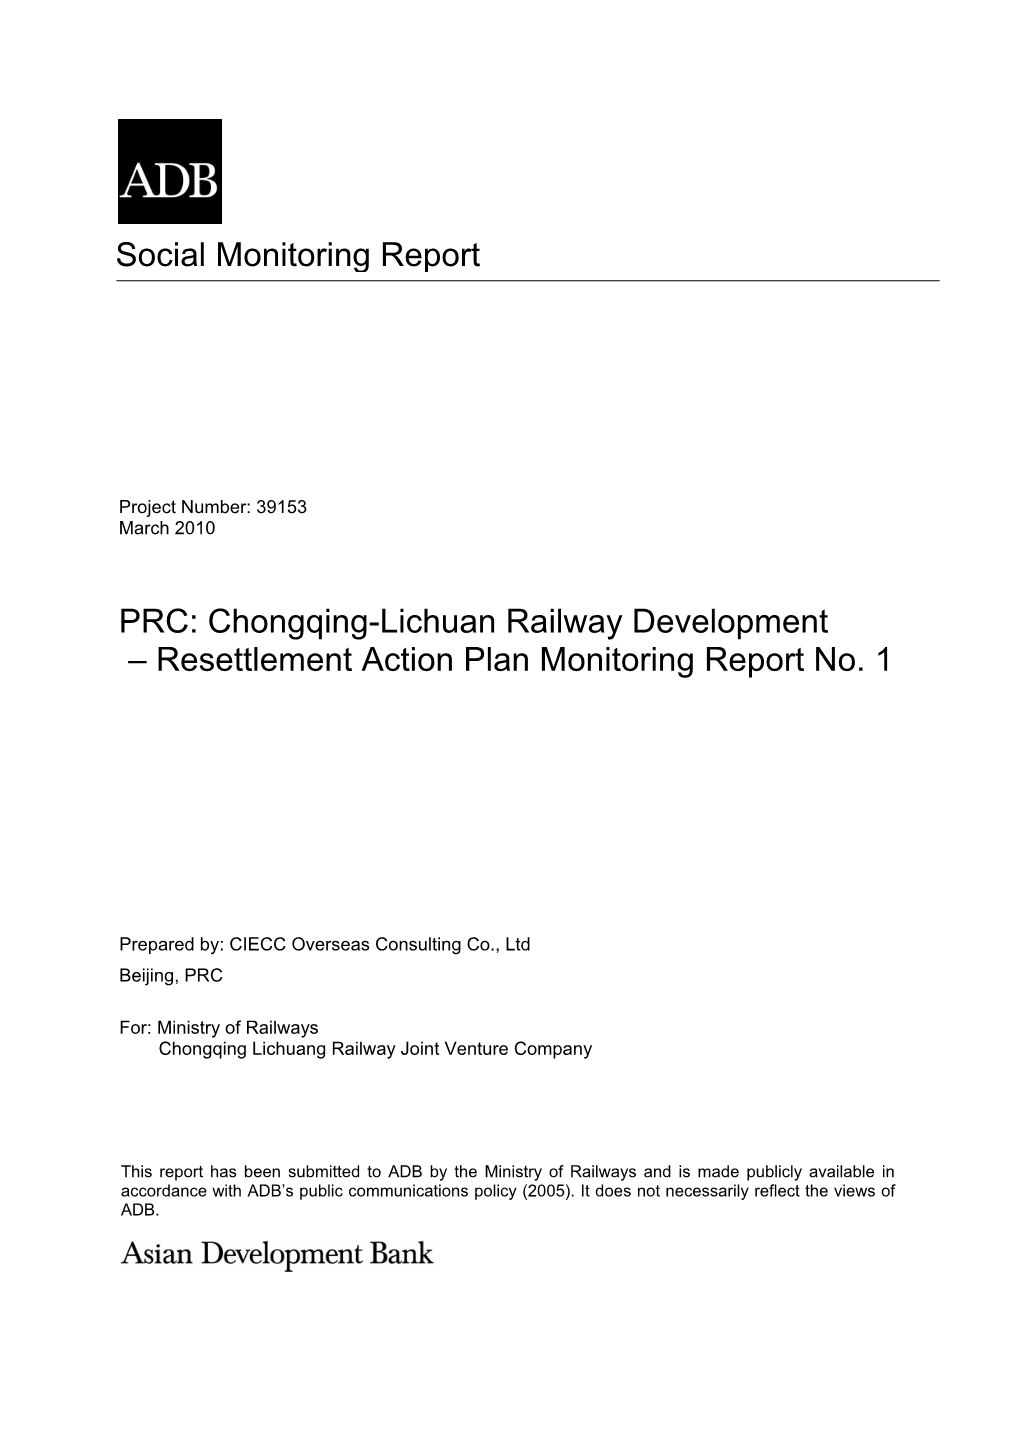 Social Monitoring Report PRC: Chongqing-Lichuan Railway